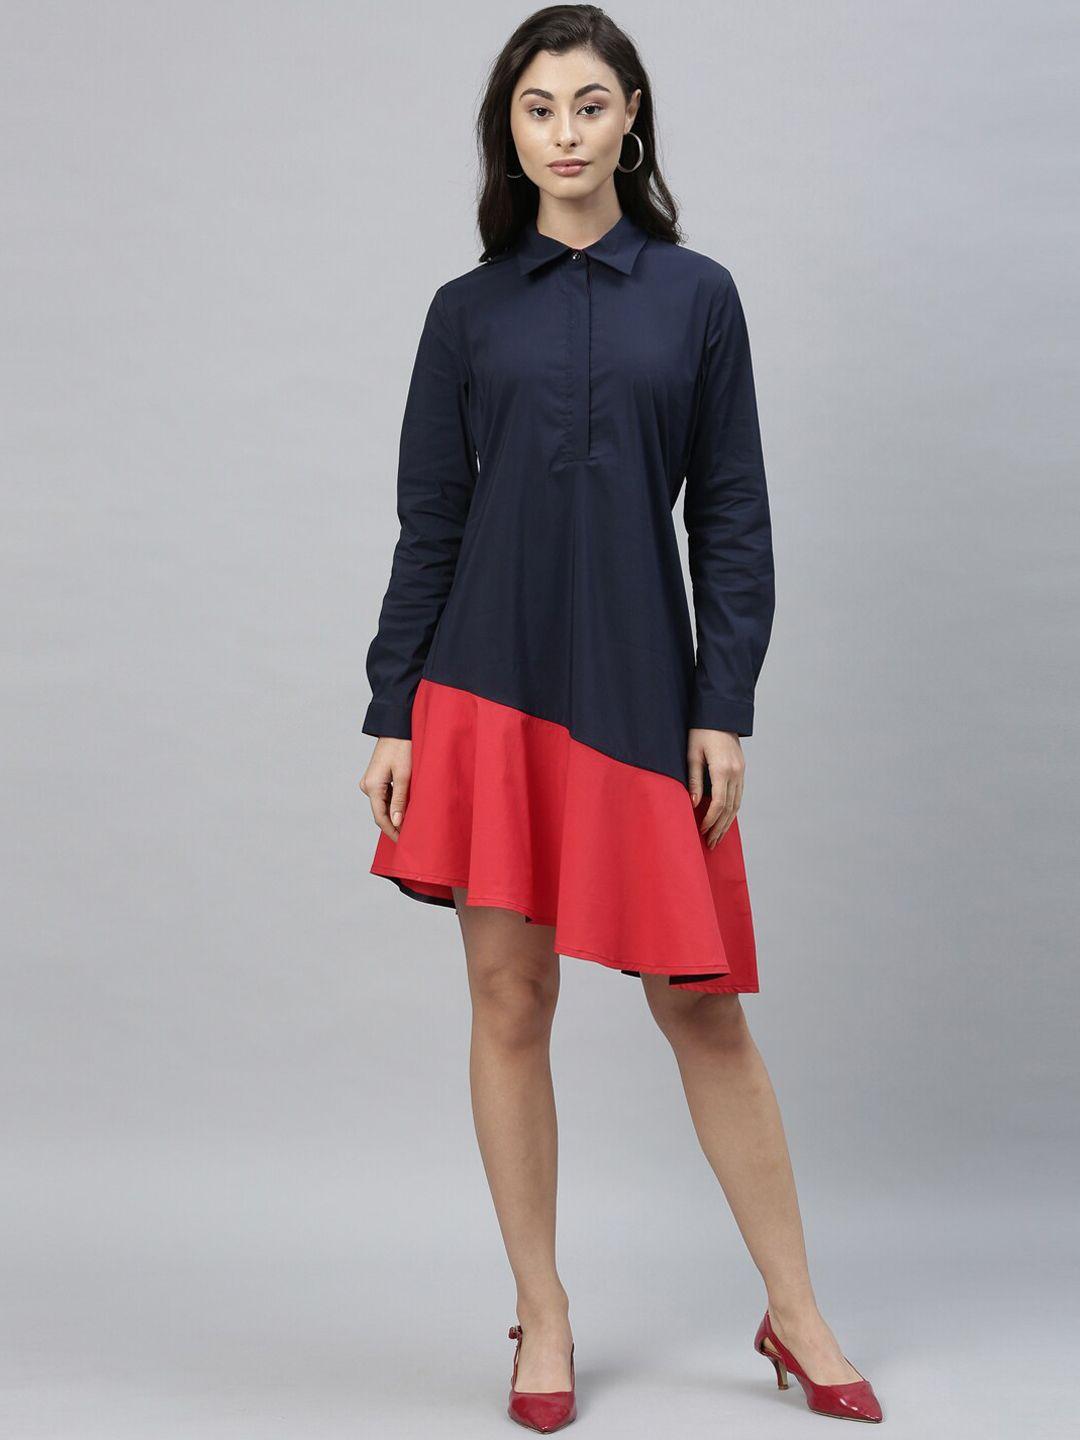 rareism-women-navy-blue-&-red-colourblocked-shirt-dress-with-ruffles